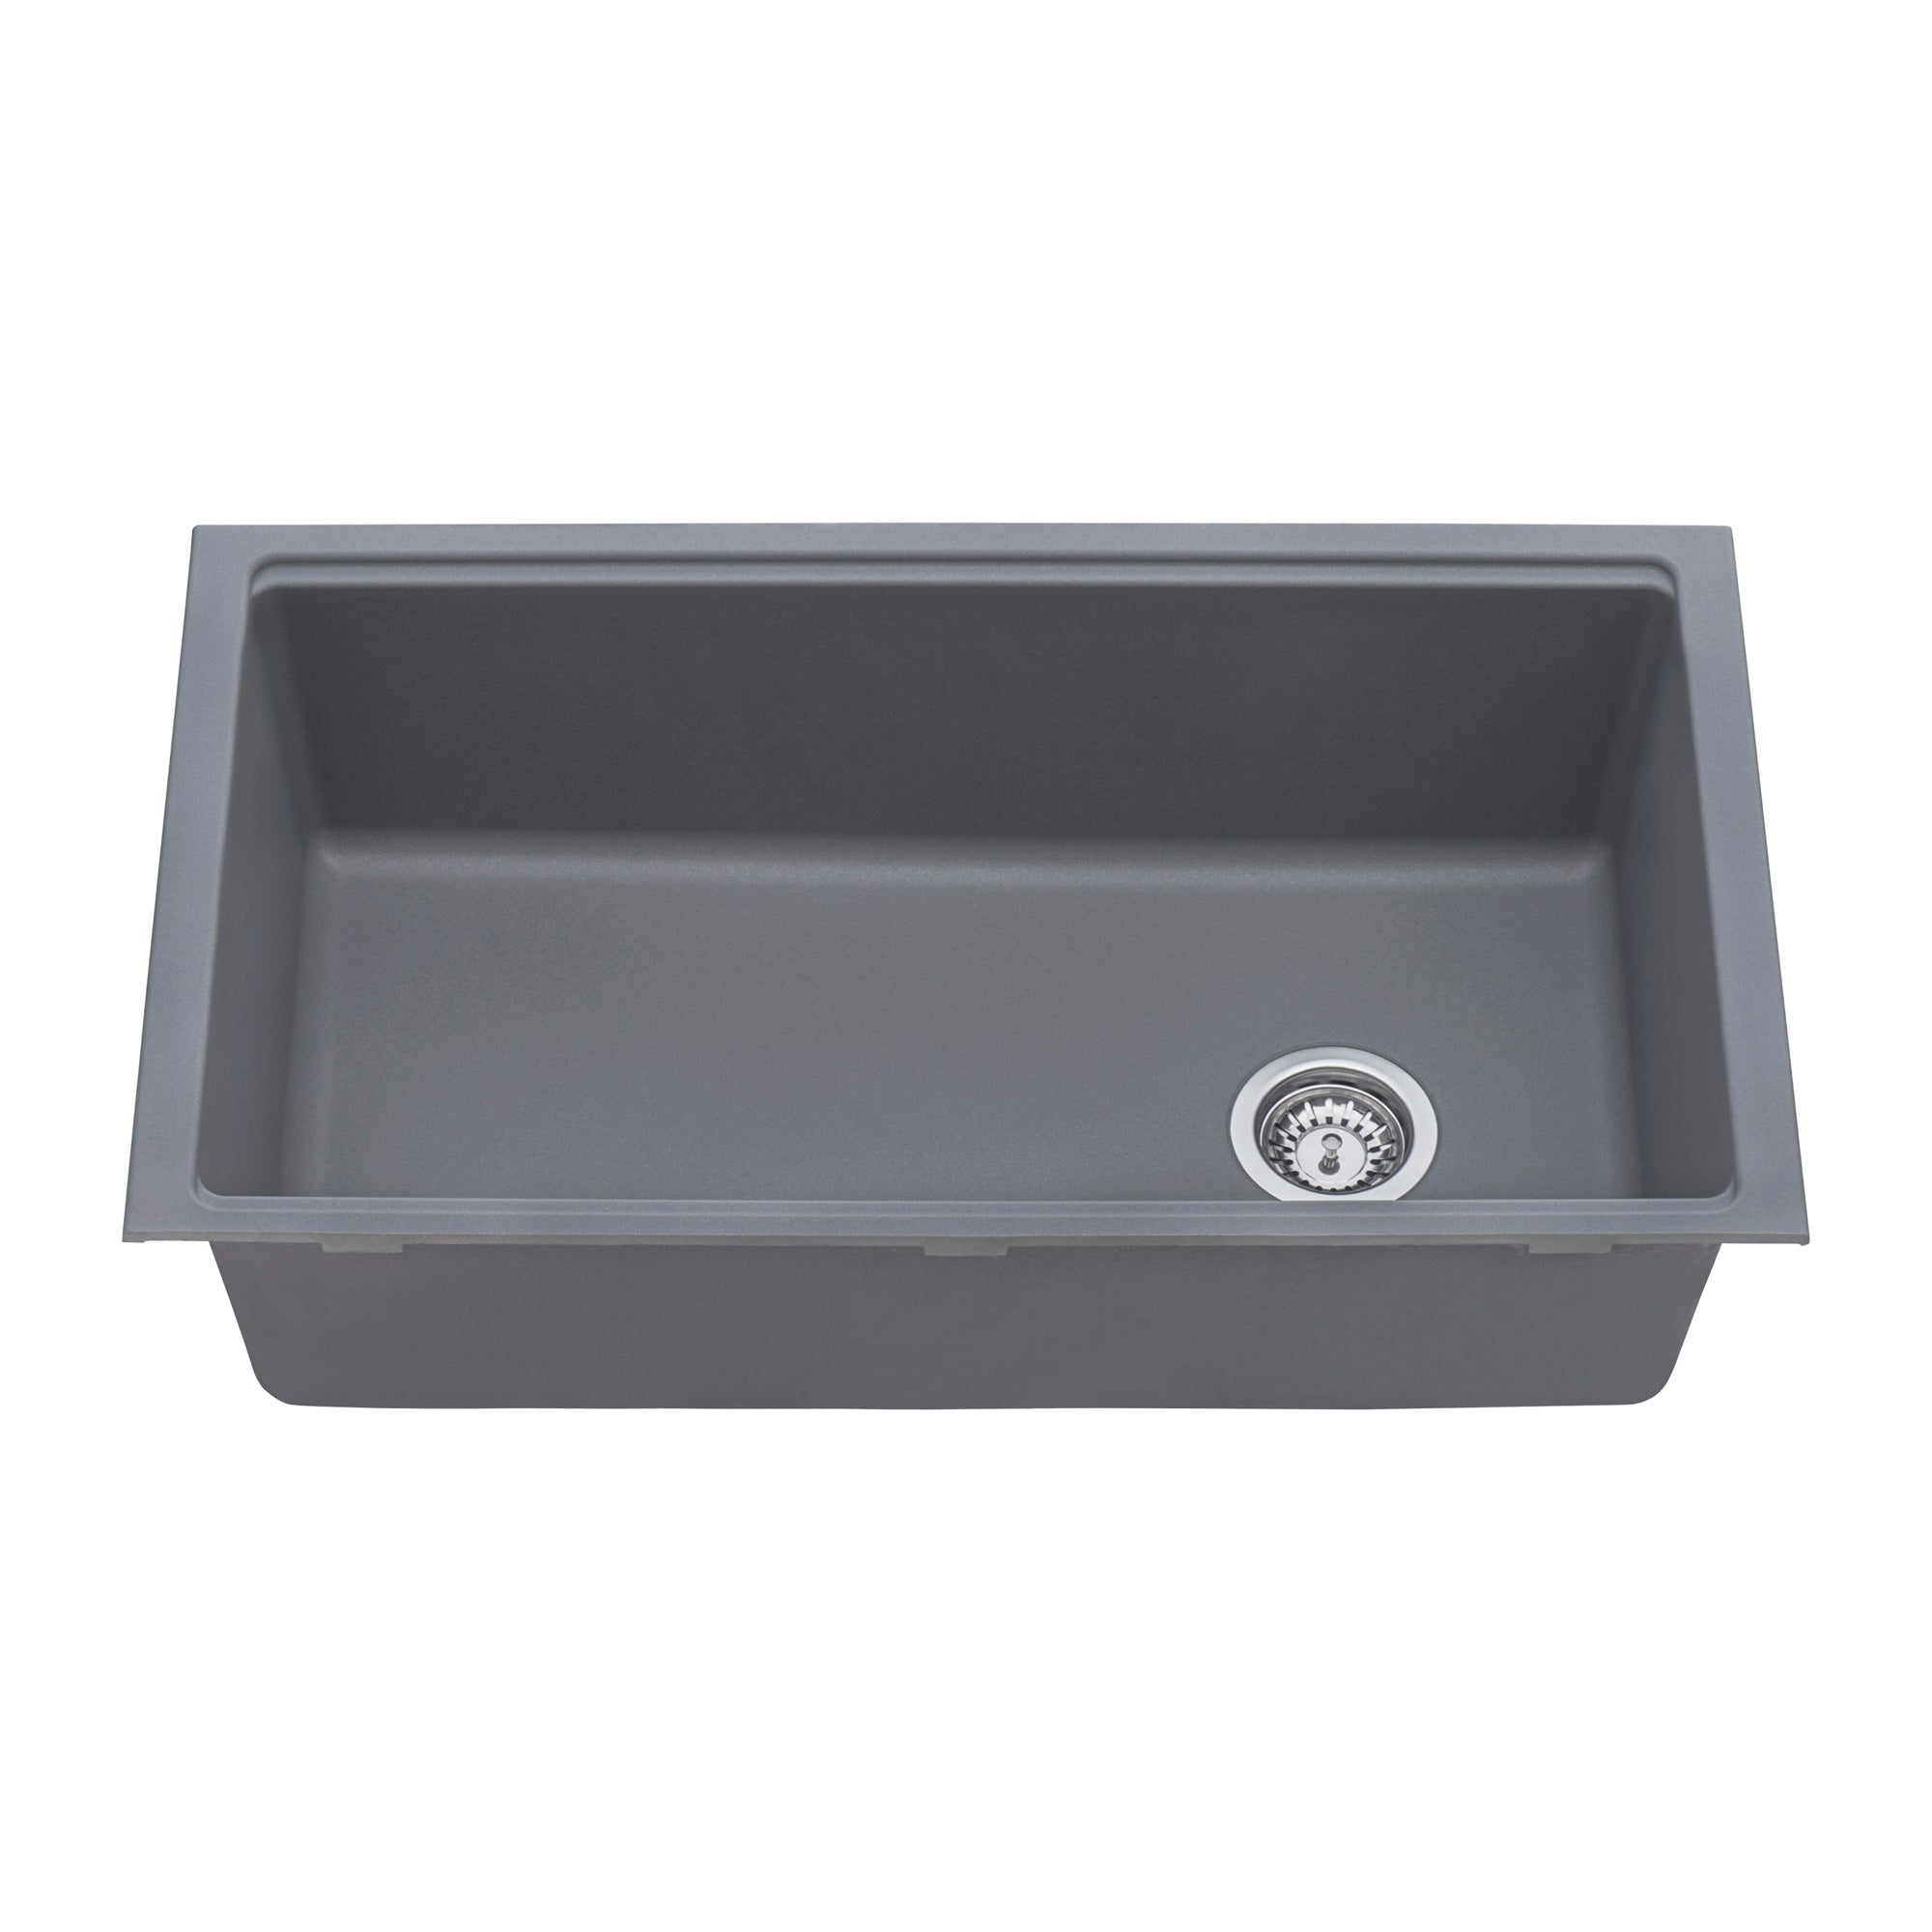 Ruvati 33-inch Undermount Workstation Granite Composite Kitchen Sink Urban Gray – RVG2302UG